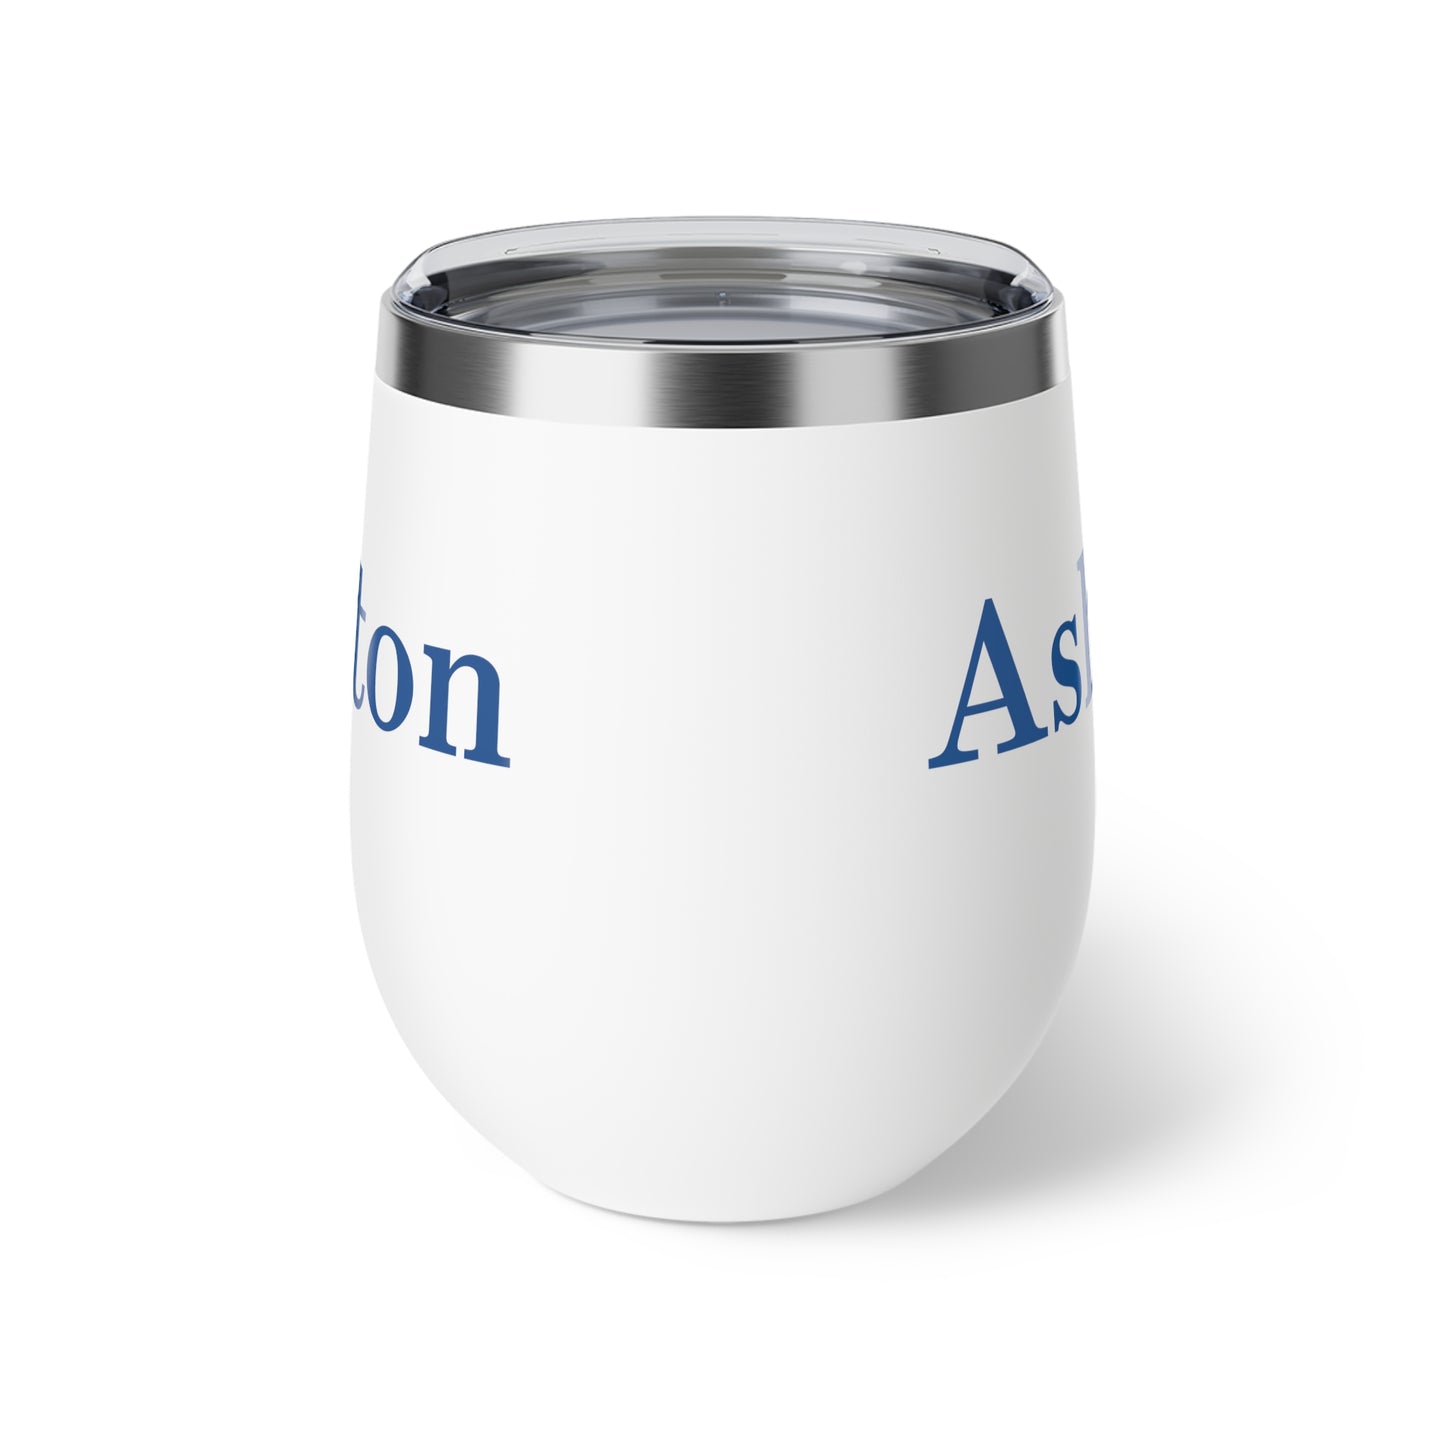 Ashton College Vacuum Insulated Cup, 12oz